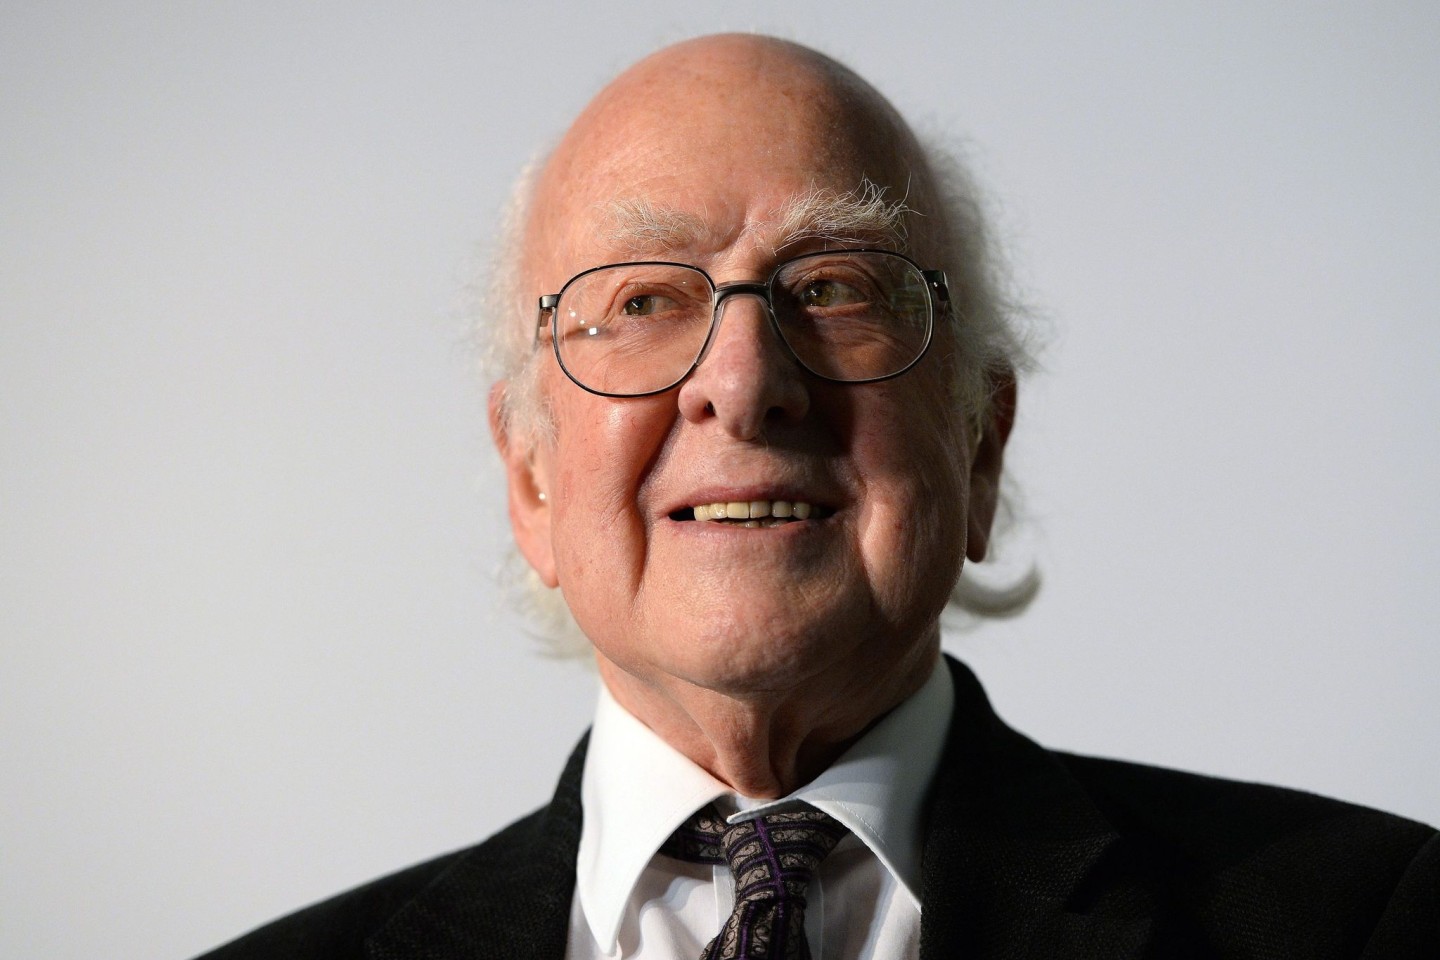 Der Nobelpreisträger Peter Higgs ist im Alter von 94 Jahren verstorben.